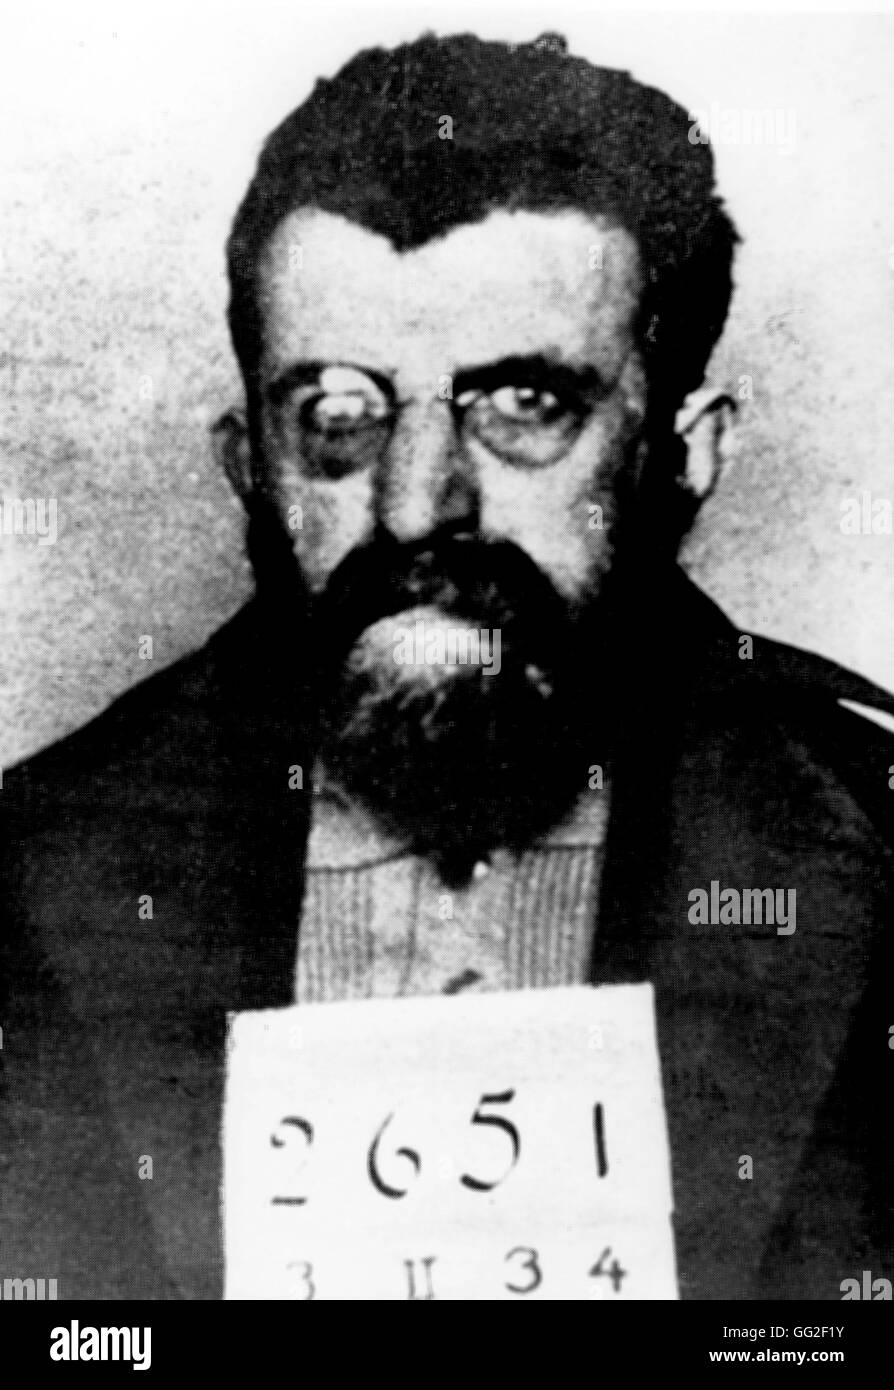 Photo de la police anti-fasciste de l'écrivain Erich Mühsam durant son emprisonnement à Orianemburg camp, quelques mois avant son assassinat, dans la nuit des longs couteaux, le 30 juin 1934, 20e siècle Allemagne Paris - BIDC Banque D'Images